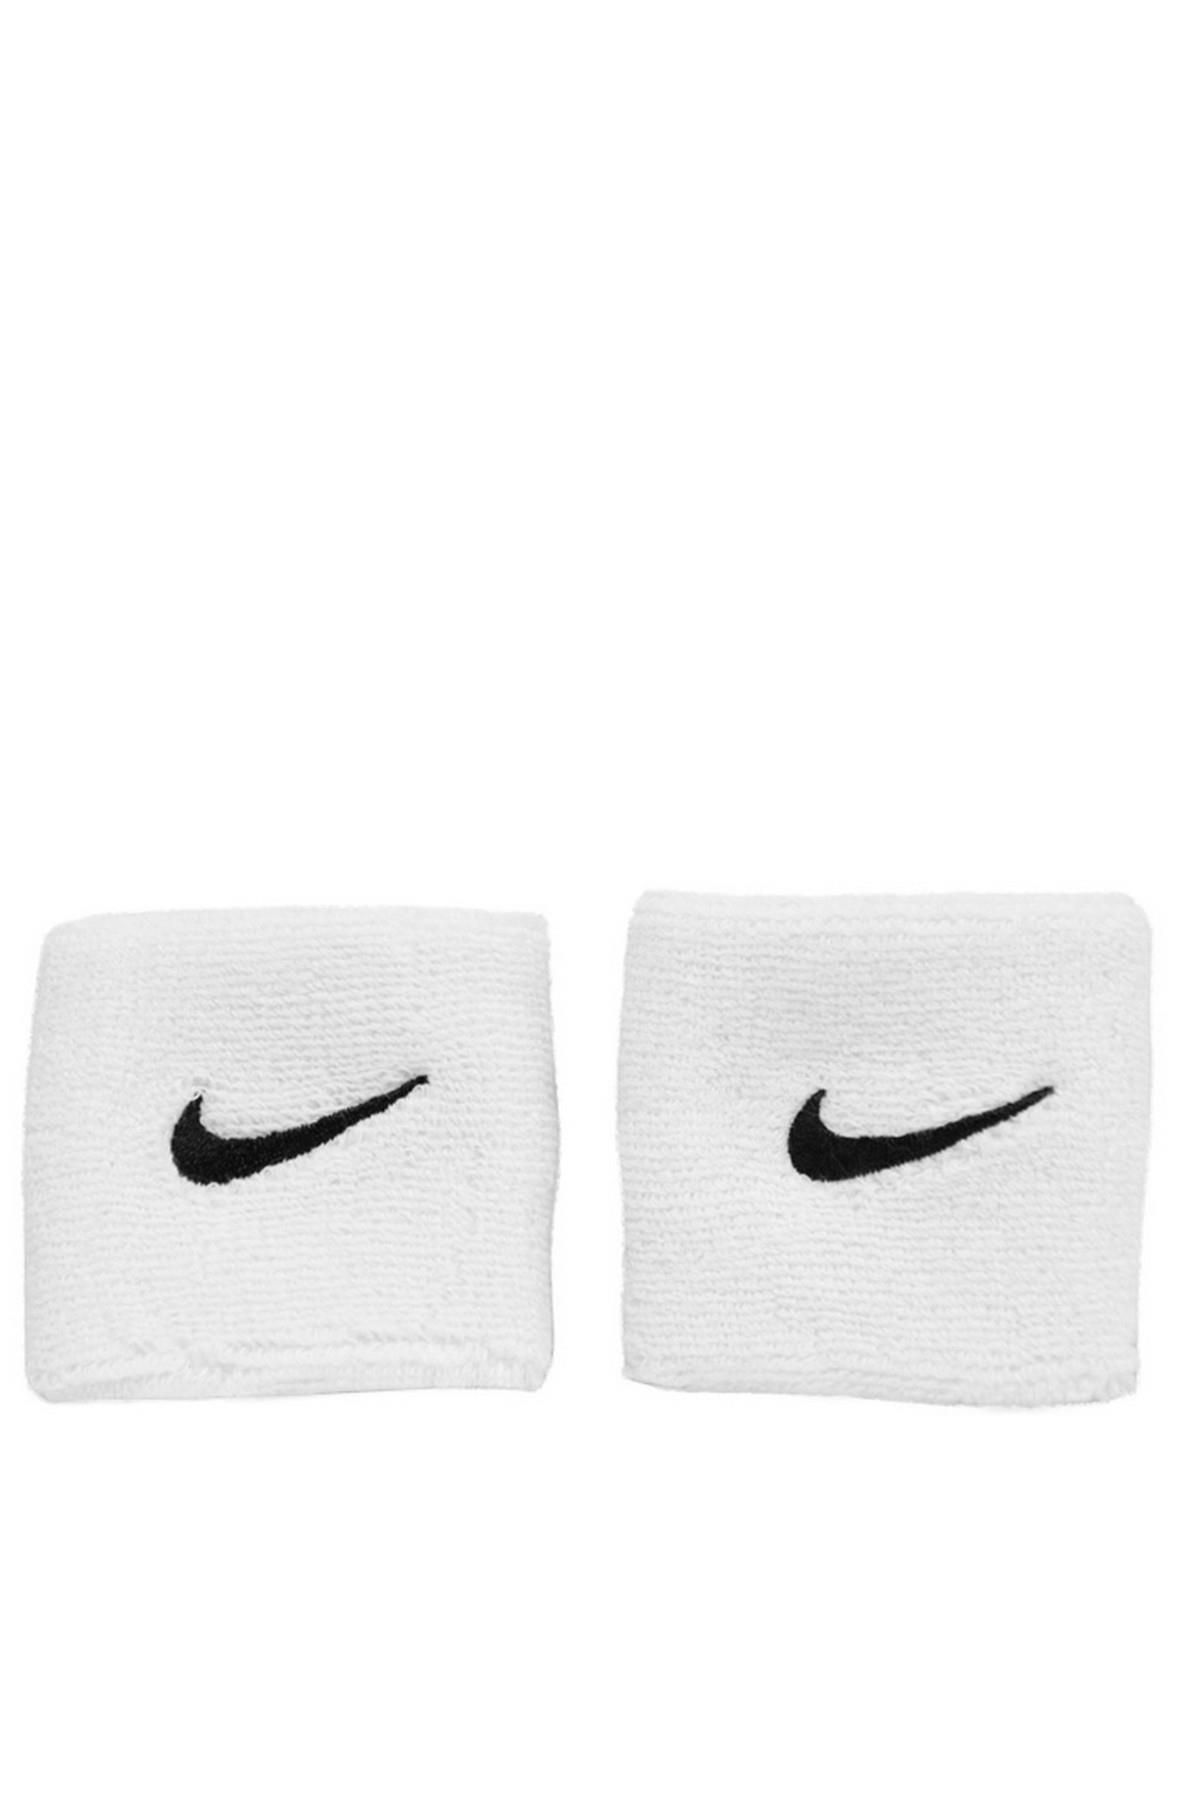 Nike Unisex Bileklik - Kol Bandı - Swoosh Wristbands